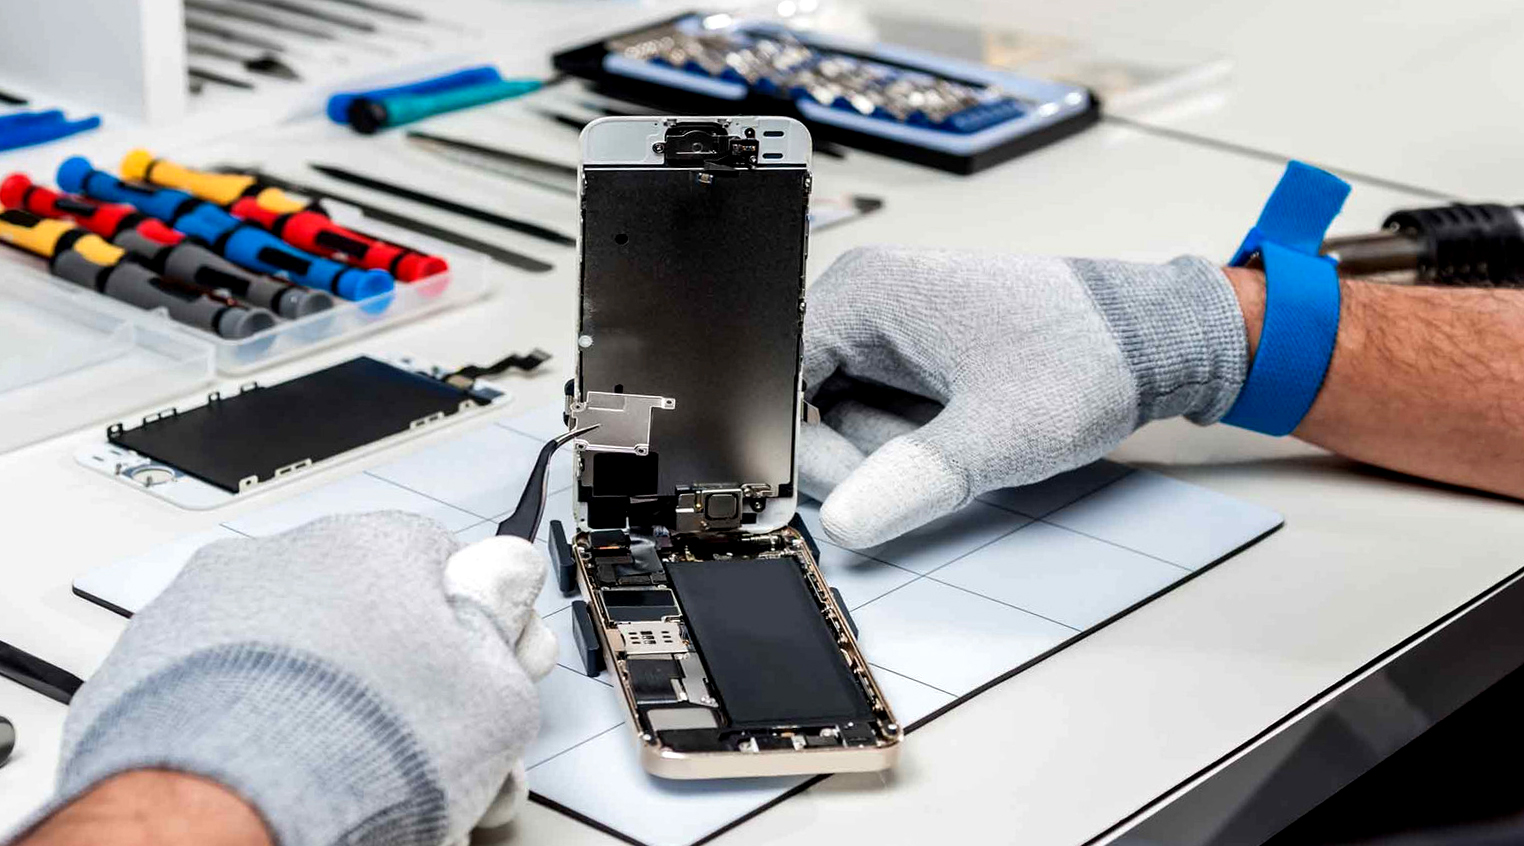 Єврокомісія хоче зобов'язати виробників смартфонів збільшити термін служби акумуляторів і випускати запчастини протягом 5 років